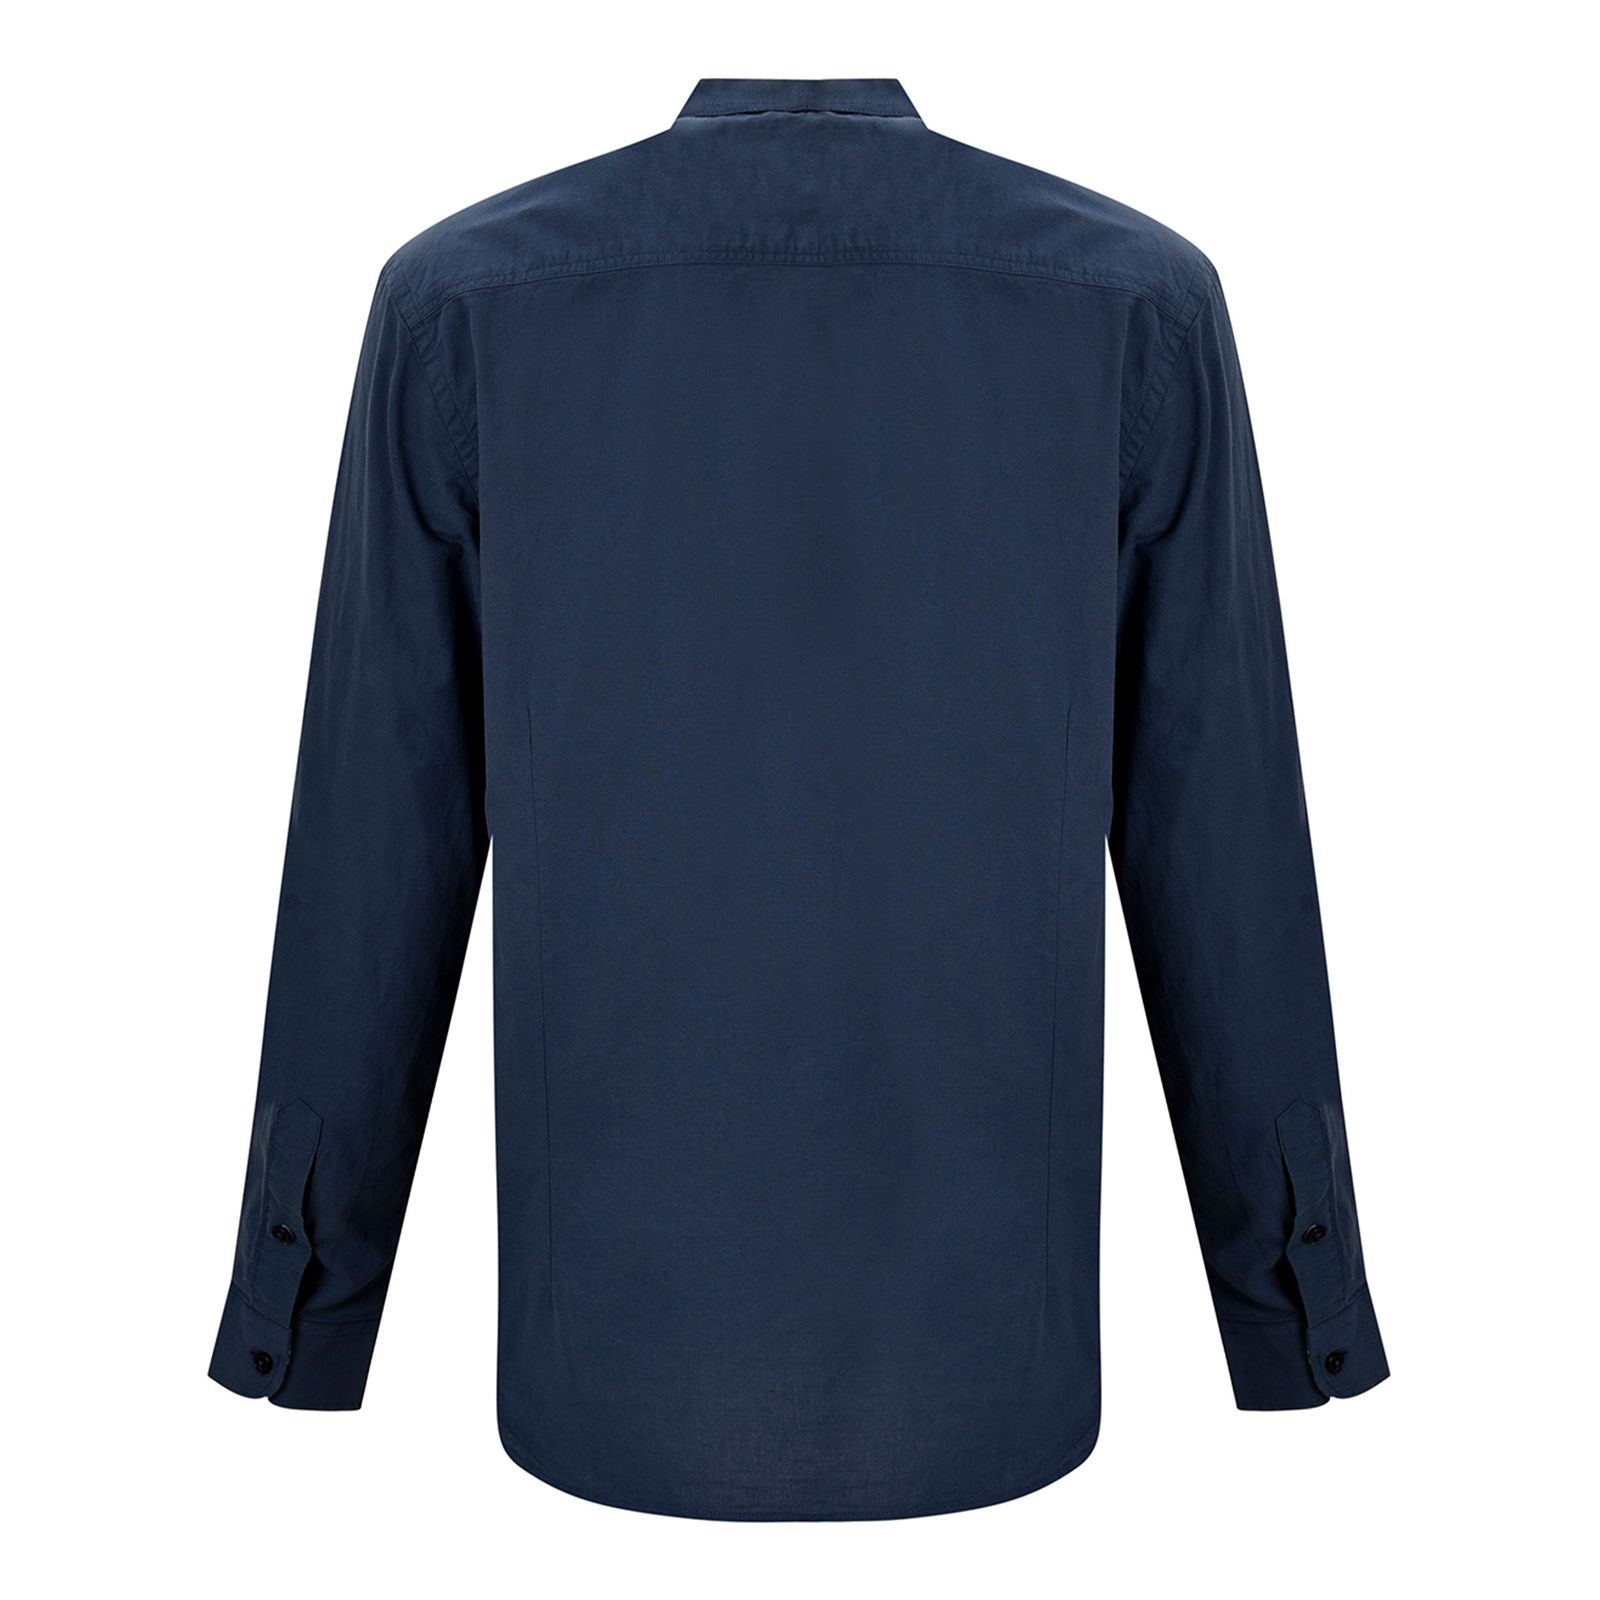 پیراهن آستین بلند مردانه بادی اسپینر مدل 1118 کد 1 رنگ آبی -  - 2